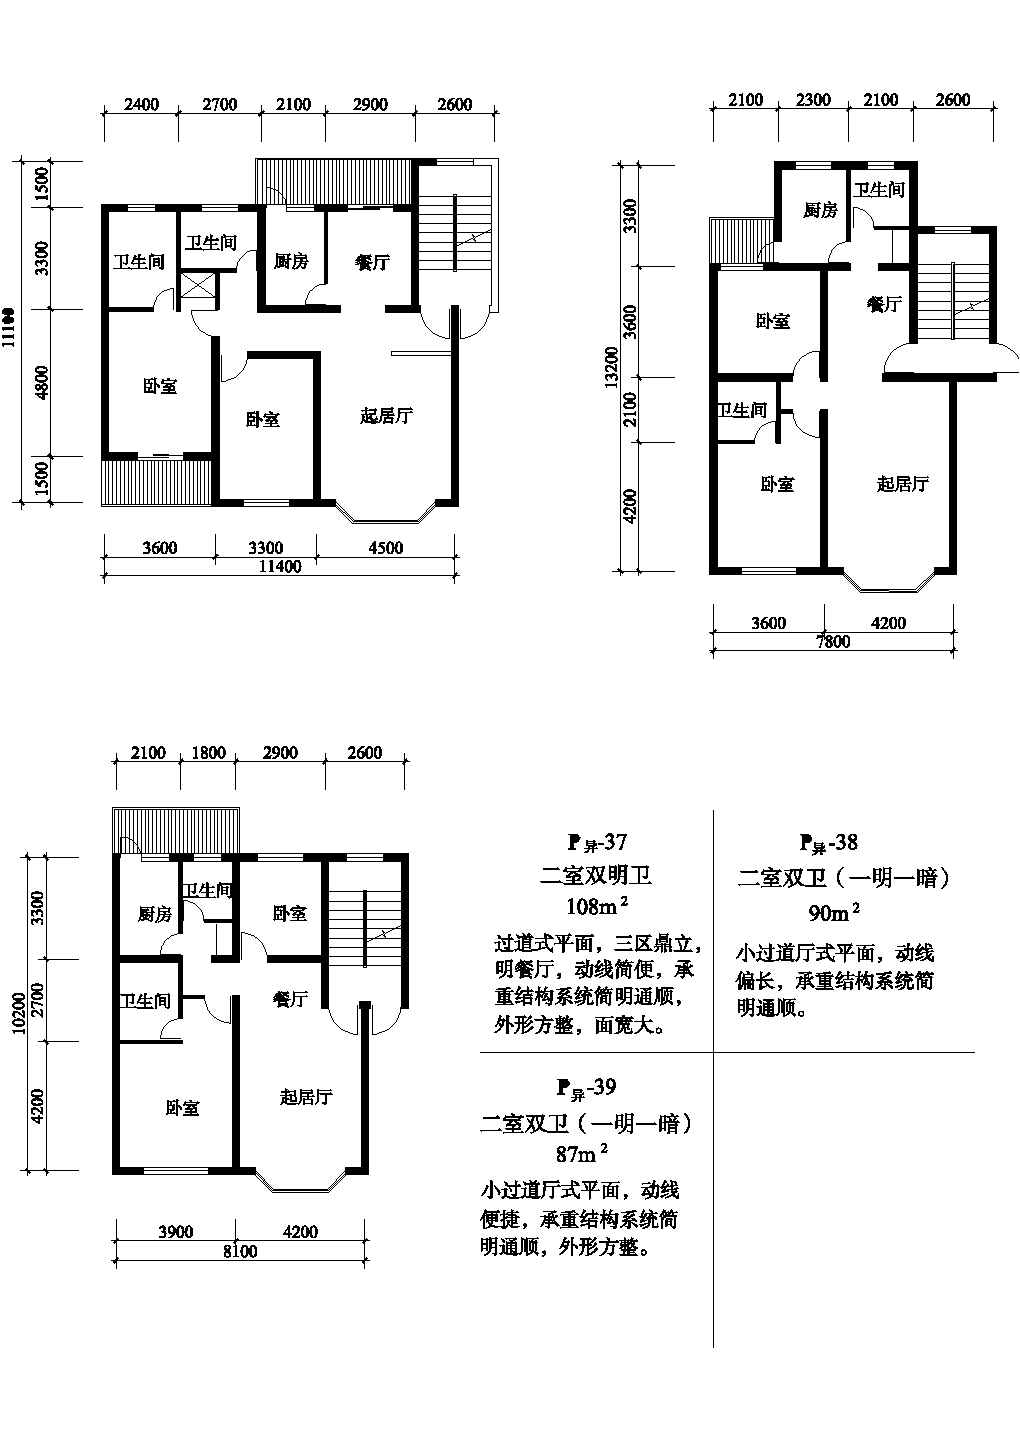 二室108/90/87平方单元式住宅平面图纸